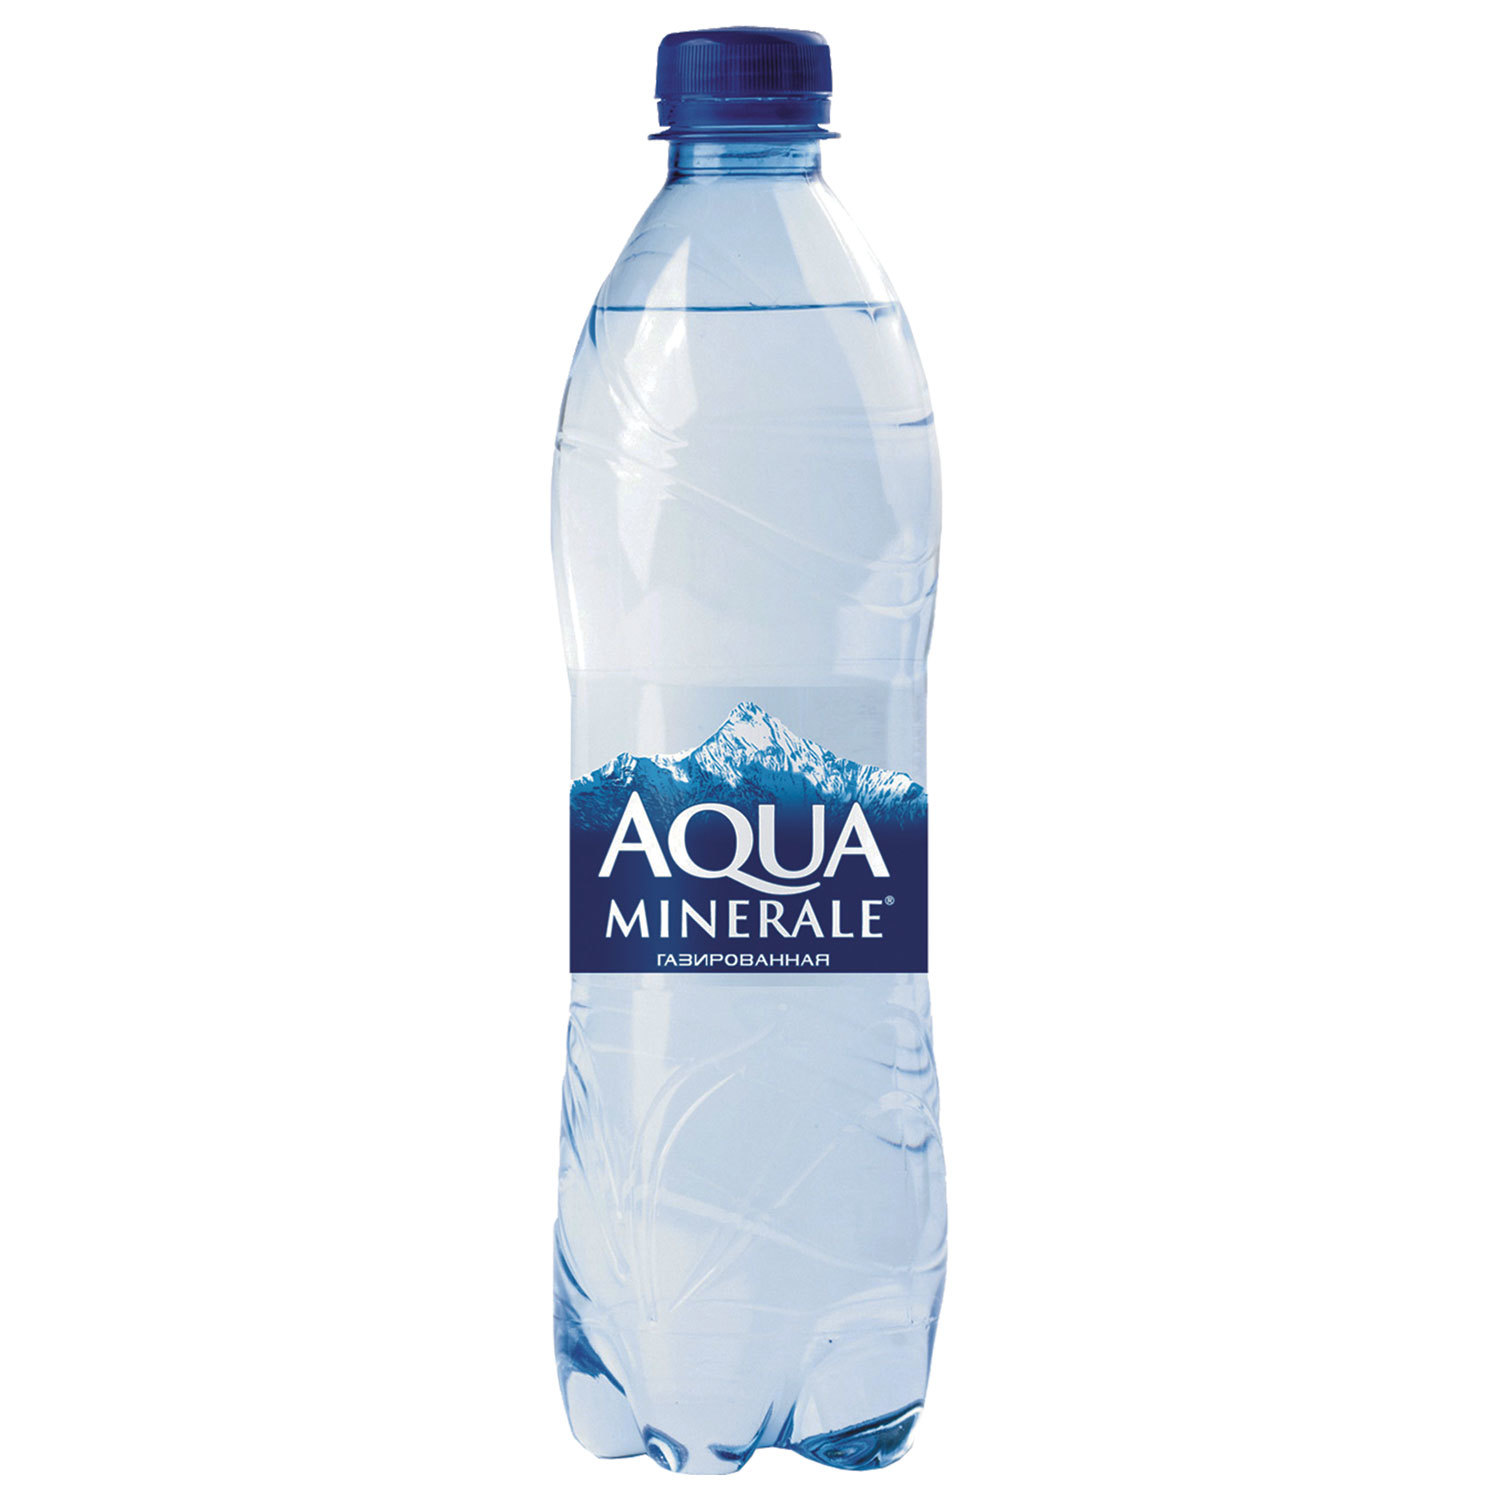 Бутылка негазированной воды. Aqua minerale вода питьевая ГАЗ 0.5Л. Вода Аква Минерале газированная 0,5л. Минеральная вода Aqua minerale. Аква Минерале 0.5.